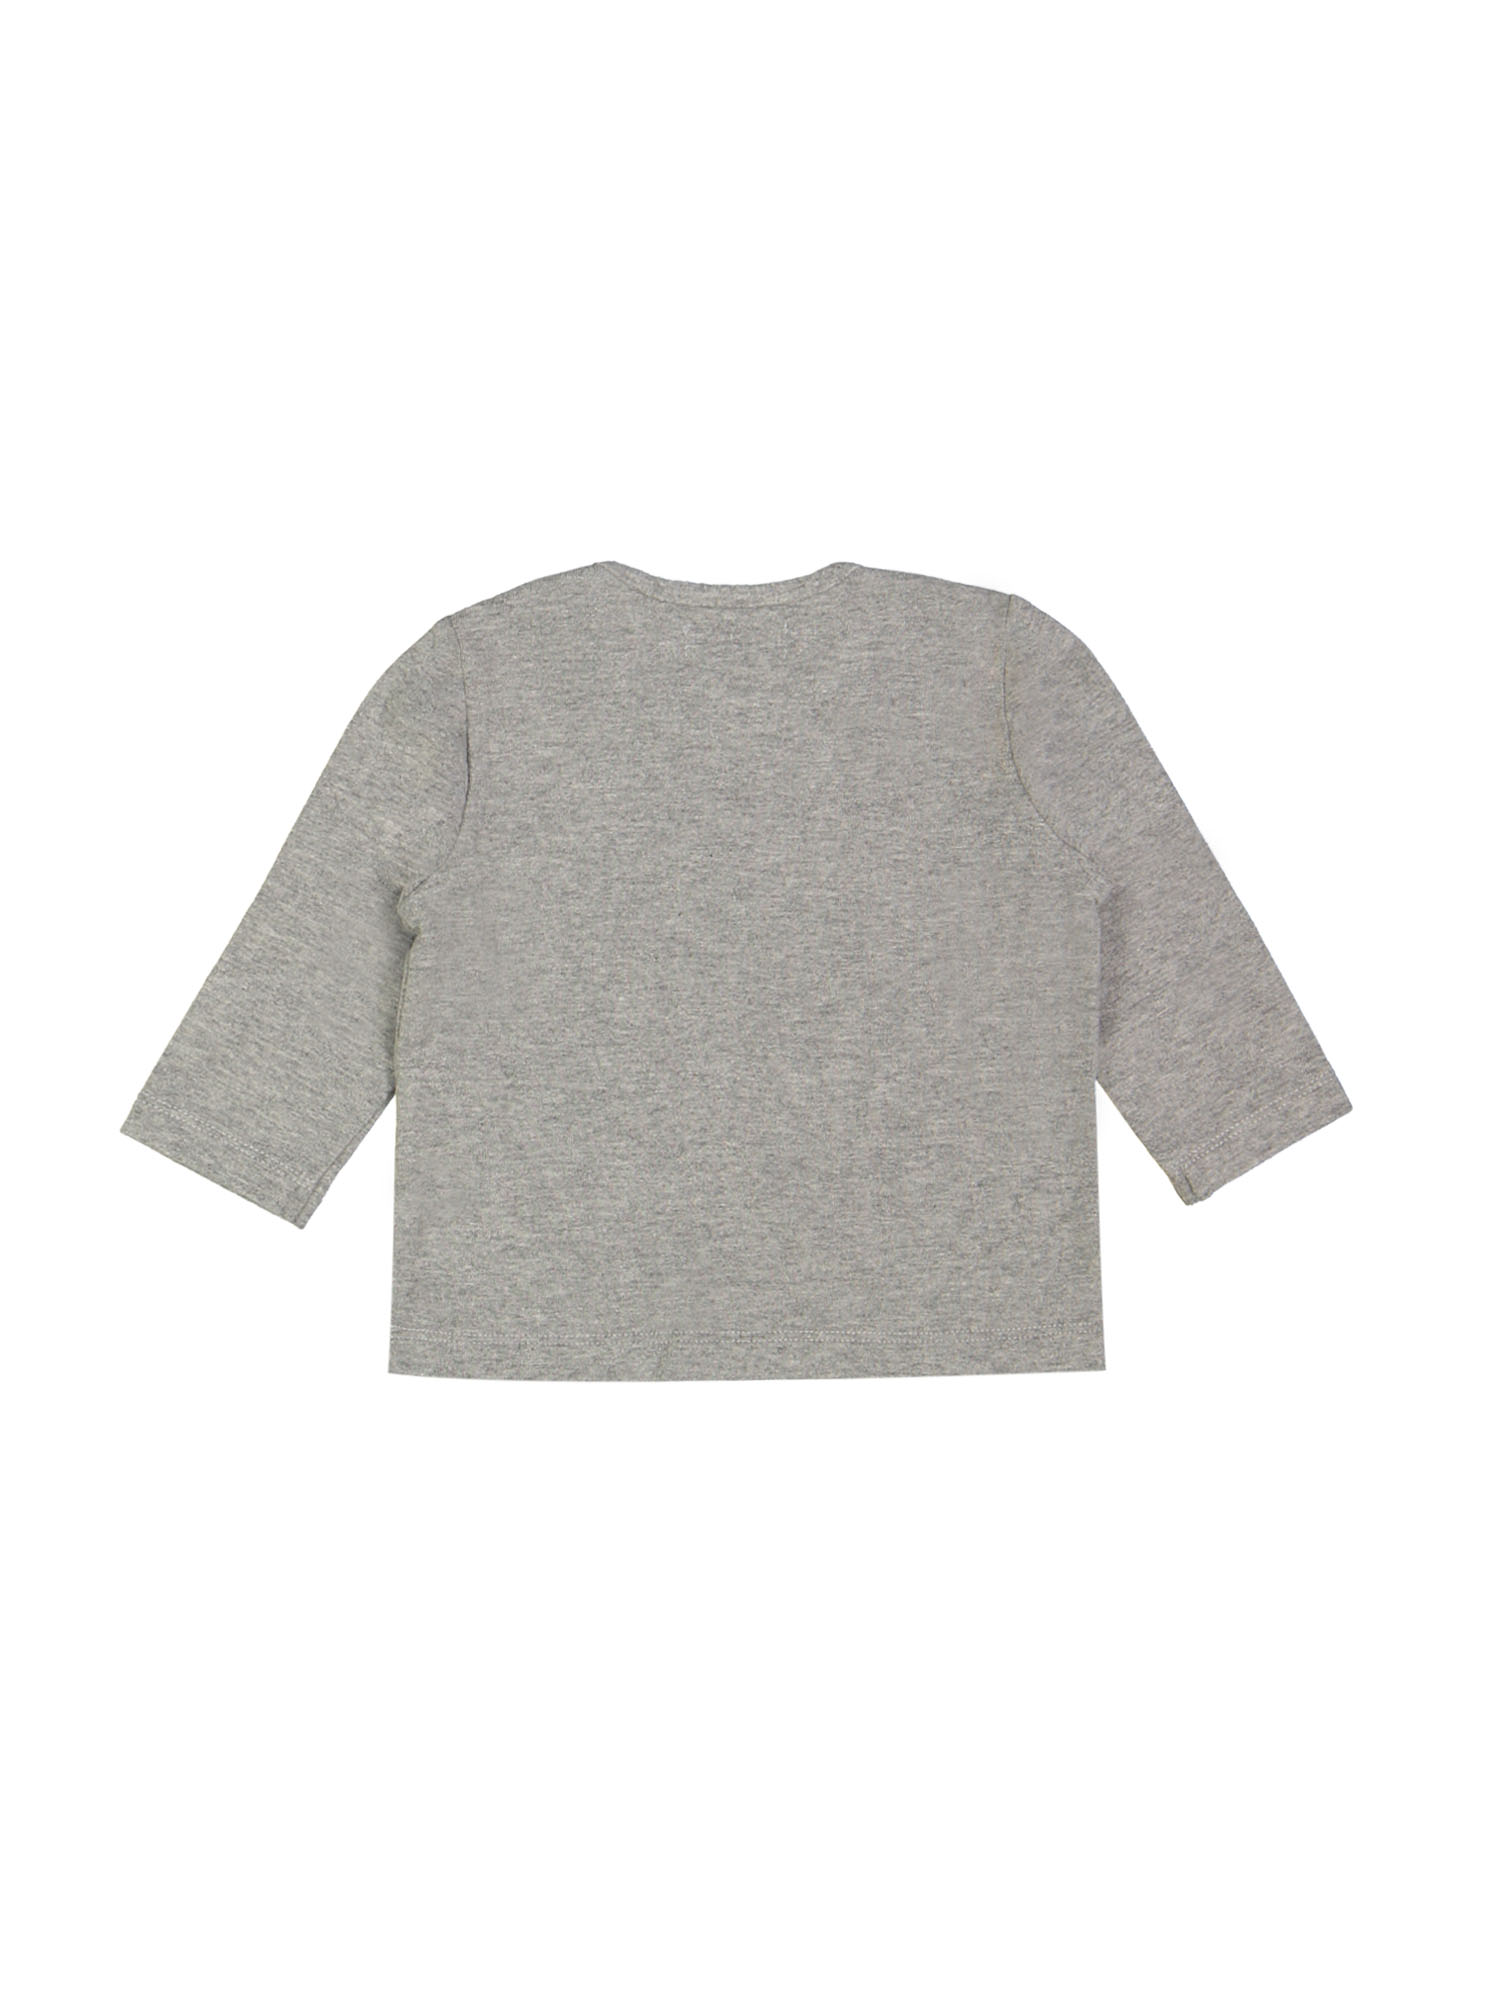 T-shirt babybirdie grijs 09m